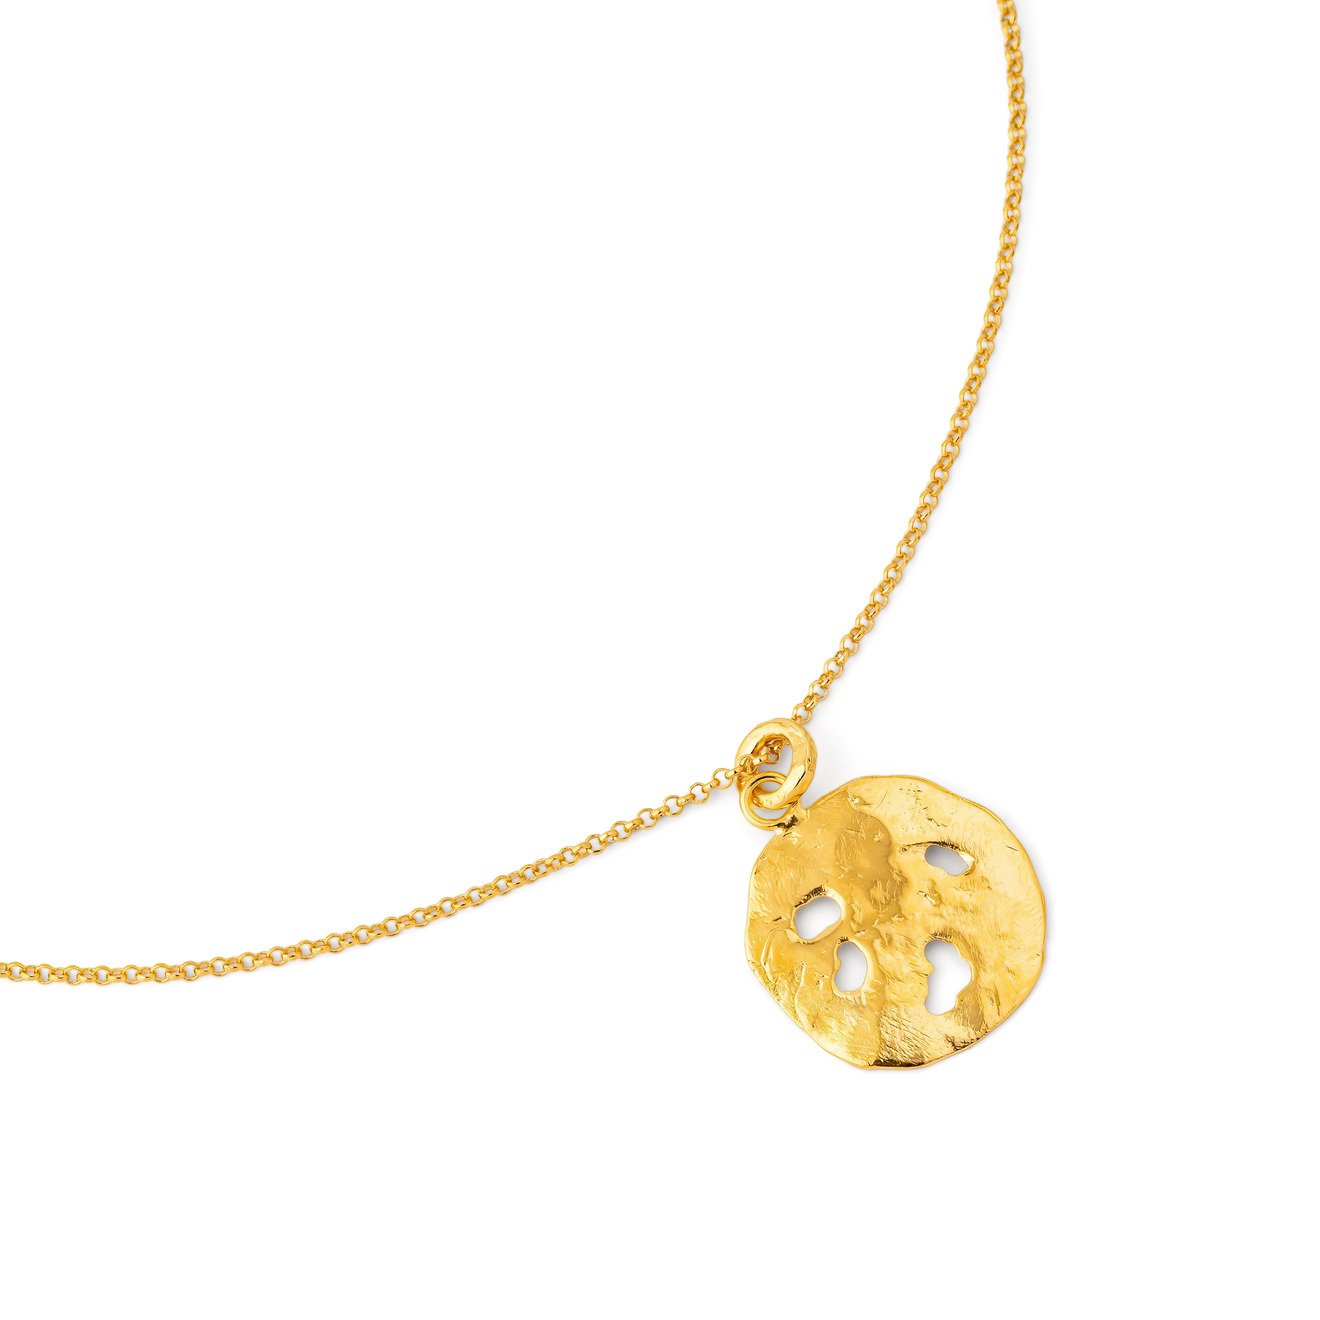 Sevenworlds Золотистая подвеска Pura Vida Medallion из бронзы aqua золотистая подвеска baby